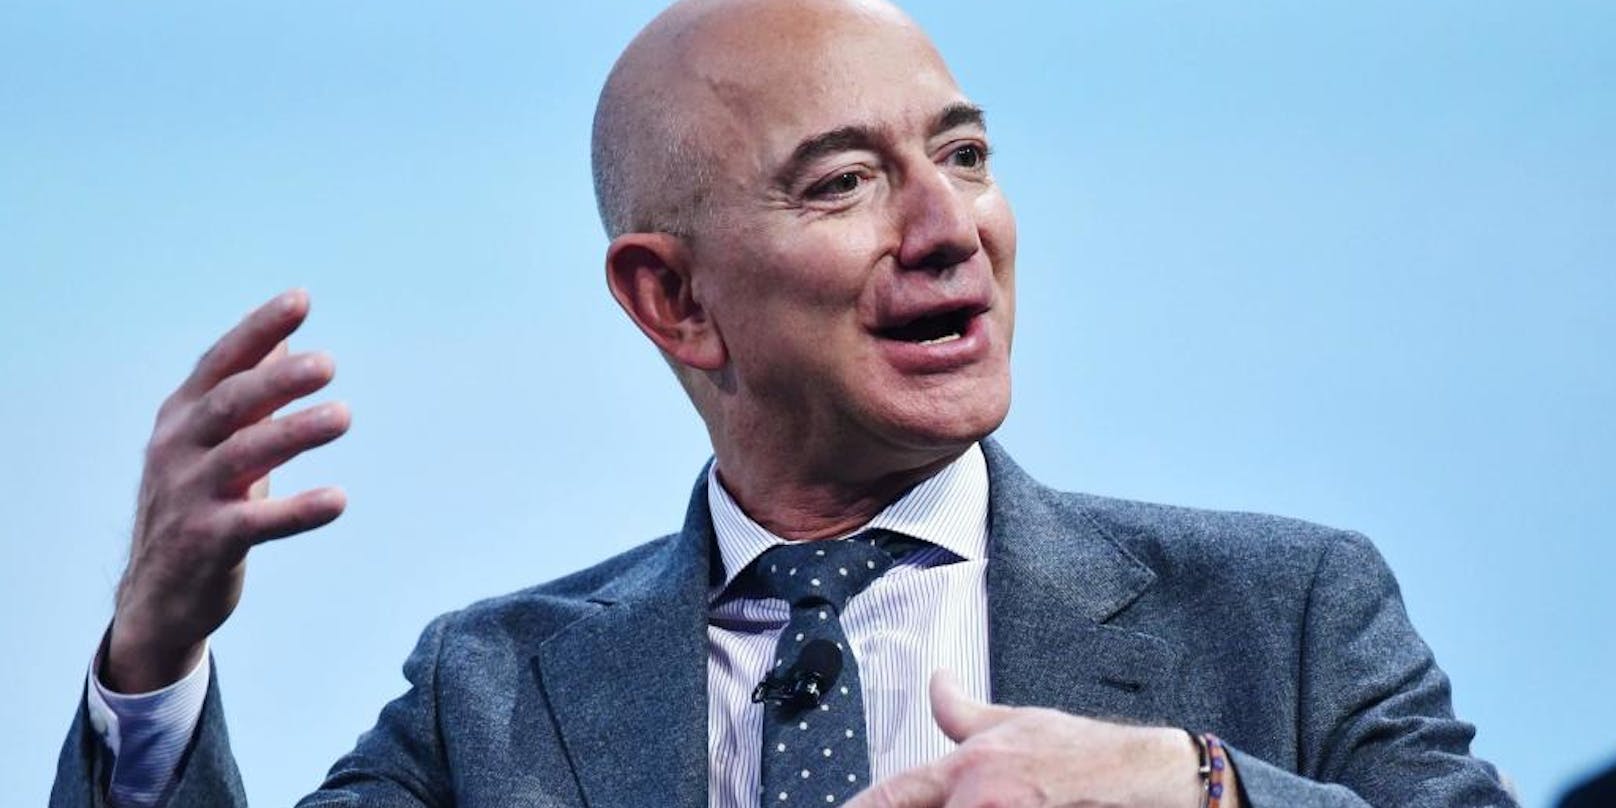 Jeff Bezos aus den USA war im Oktober 2020 mit einem Vermögen von rund 189,5 Milliarden US-Dollar der reichste Mensch der Welt.